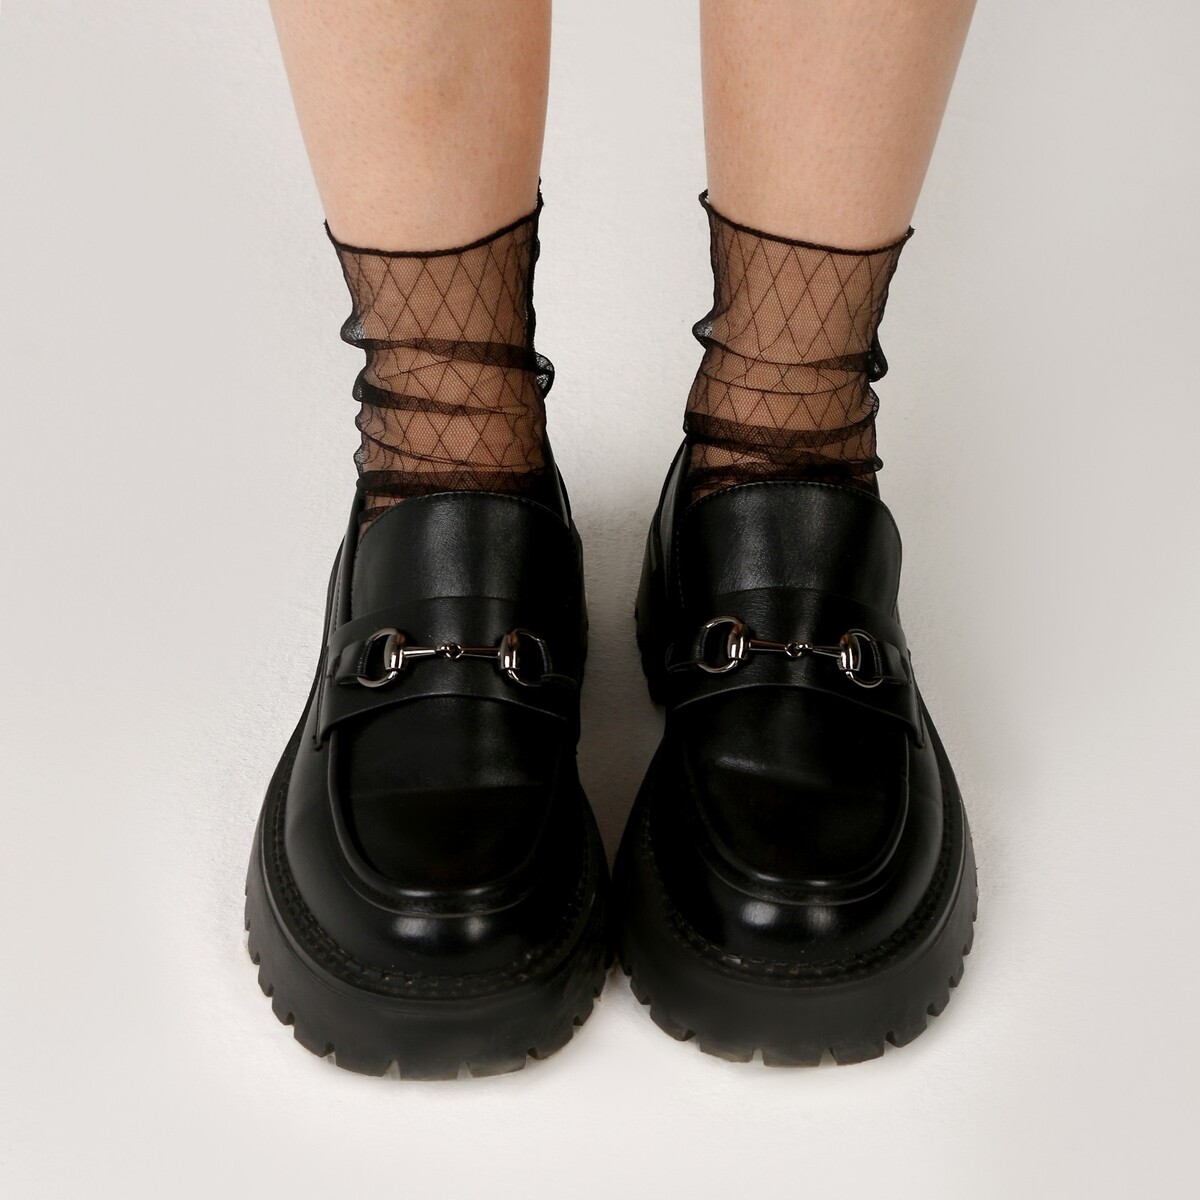 фото Карнавальный аксессуар- носки, цвет черный в клетку страна карнавалия